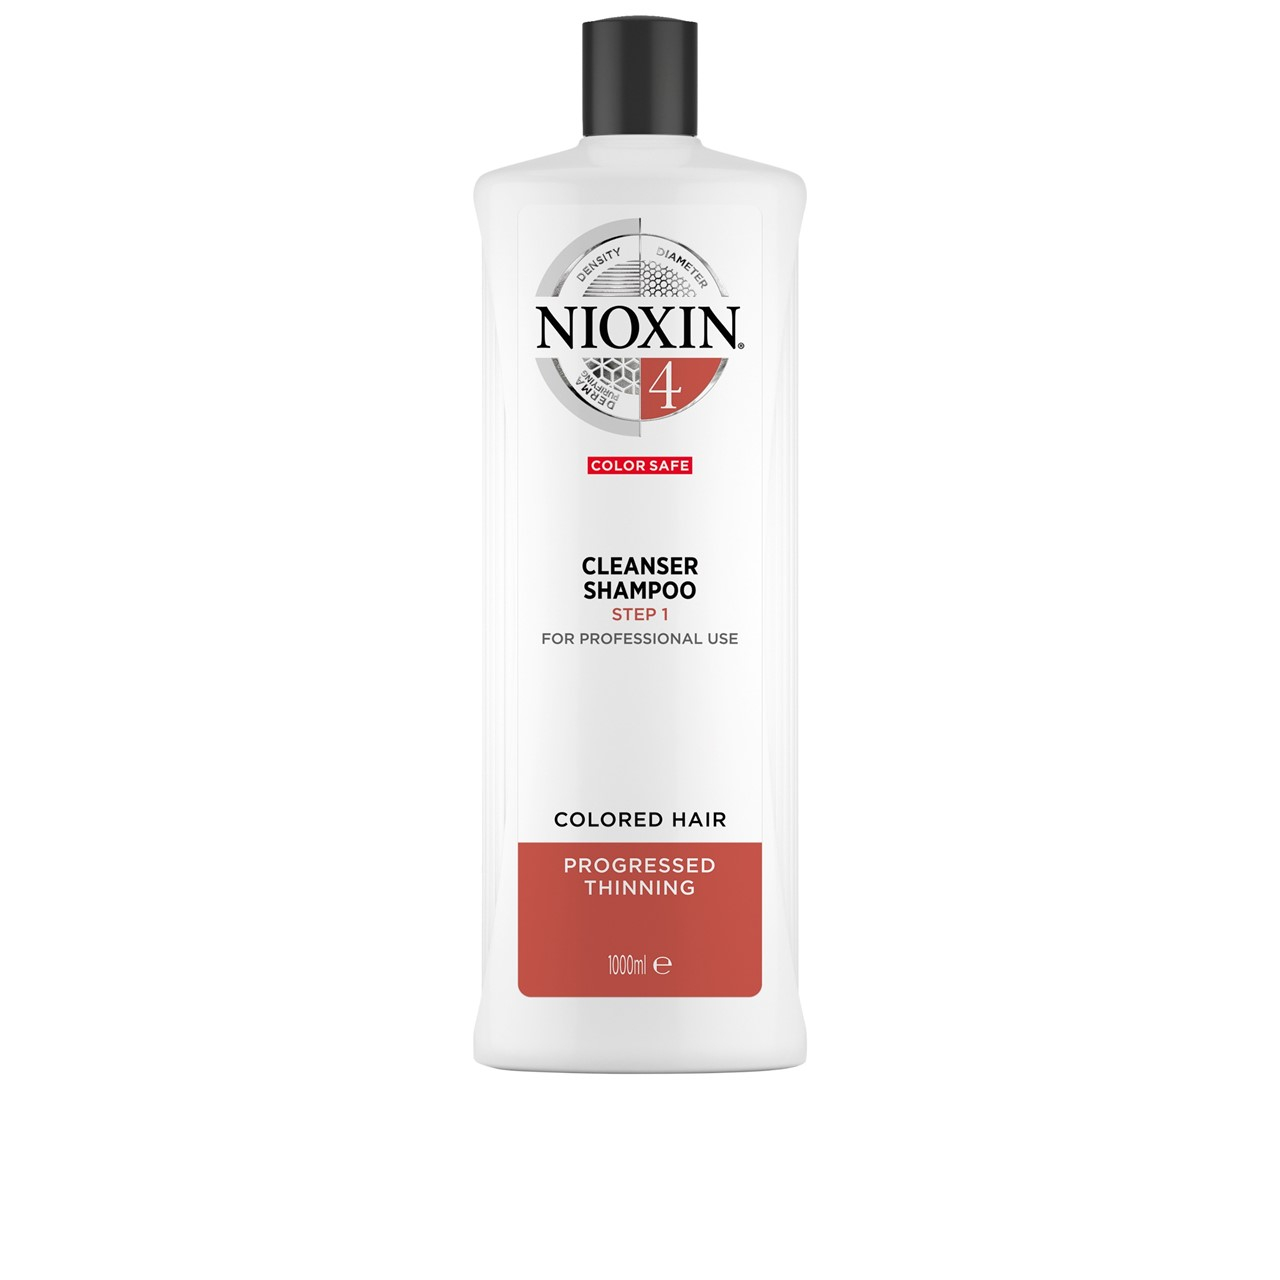 Nioxin System 4 Cleanser Shampoo 1L (33.81fl oz)